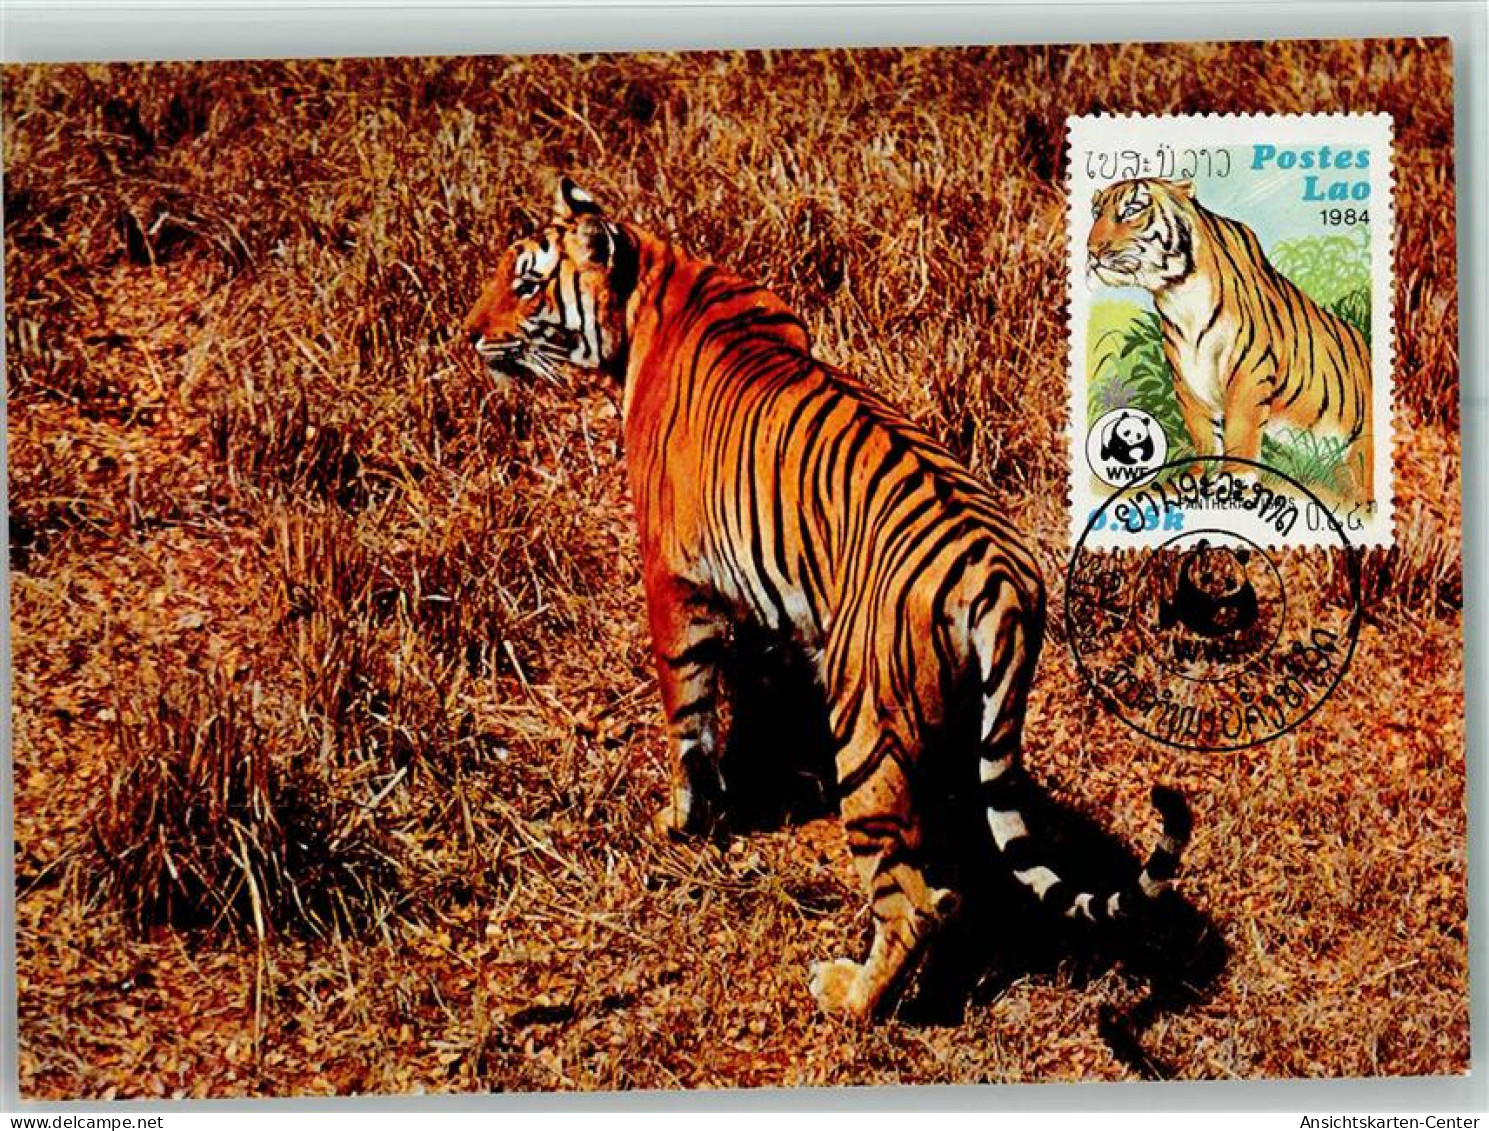 10507104 - Raubkatzen Der Tiger  - WMF Maximum Card Mit - Leoni